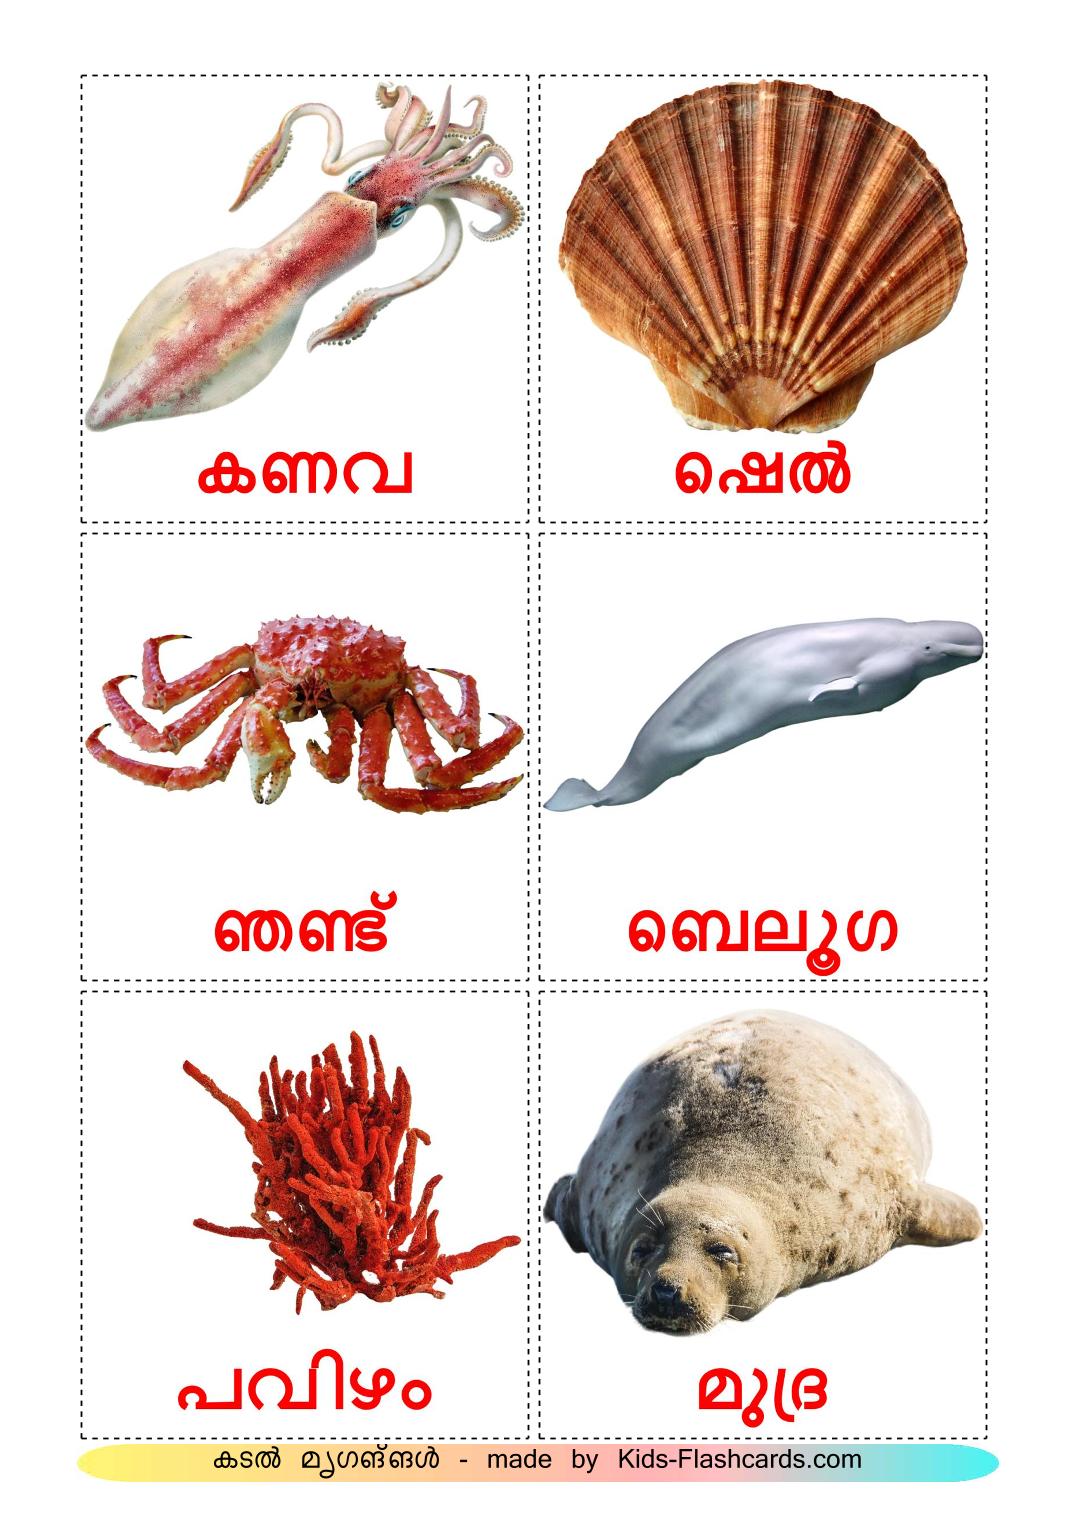 Animais Marinhos - 29 Flashcards malayalames gratuitos para impressão